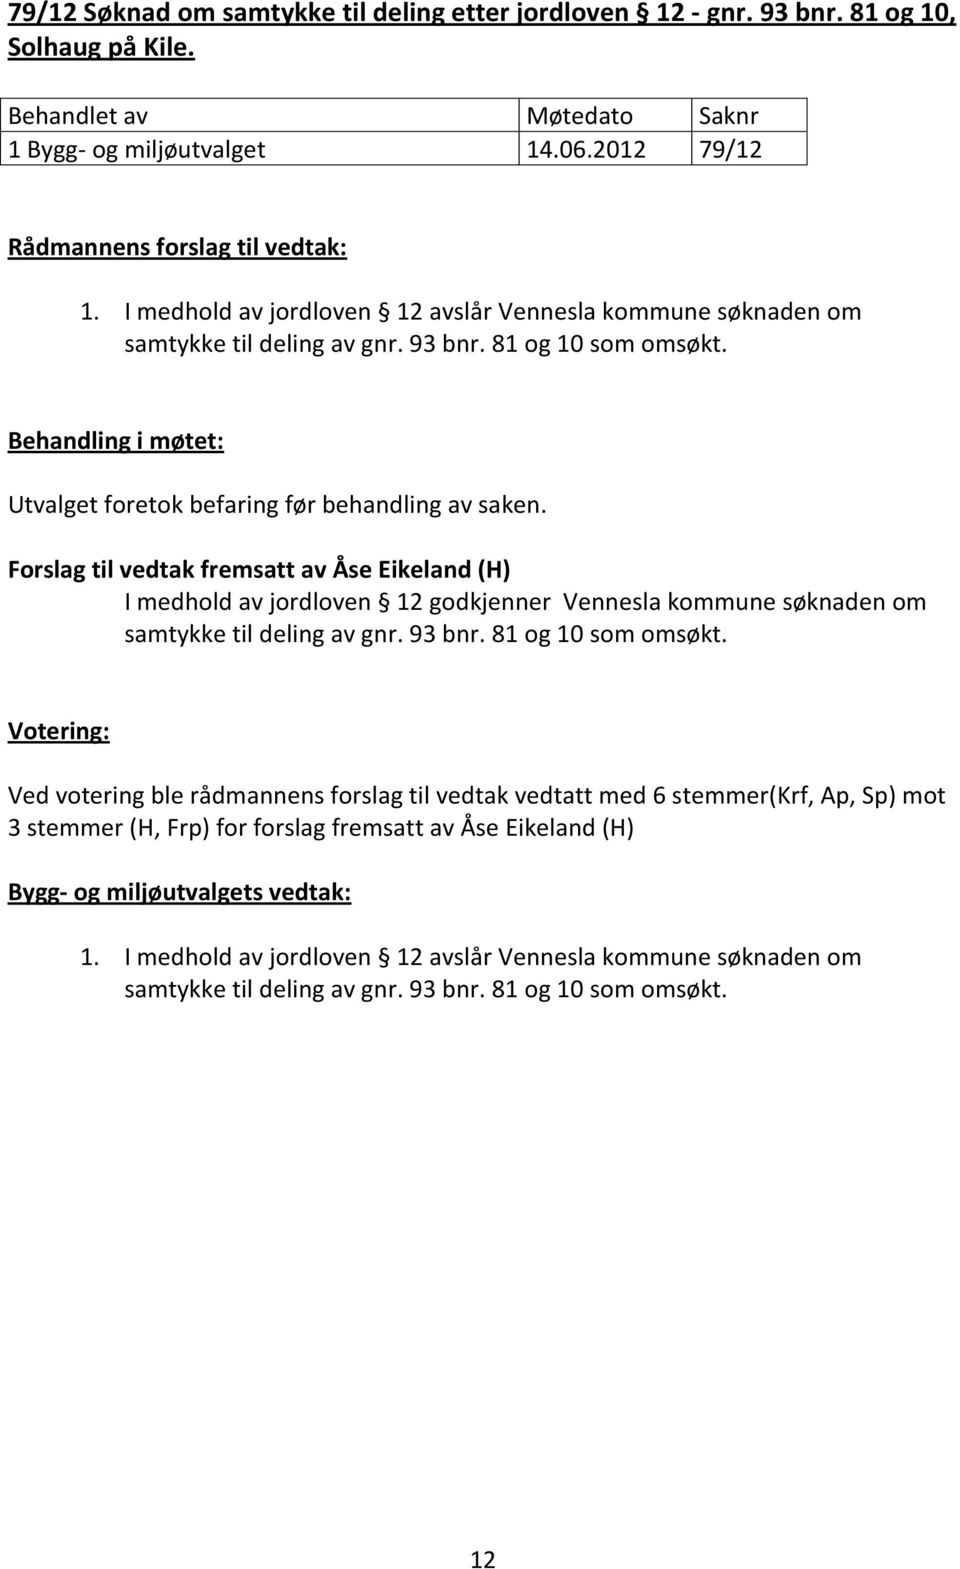 Forslag til vedtak fremsatt av Åse Eikeland (H) I medhold av jordloven 12 godkjenner Vennesla kommune søknaden om samtykke til deling av gnr. 93 bnr. 81 og 10 som omsøkt.